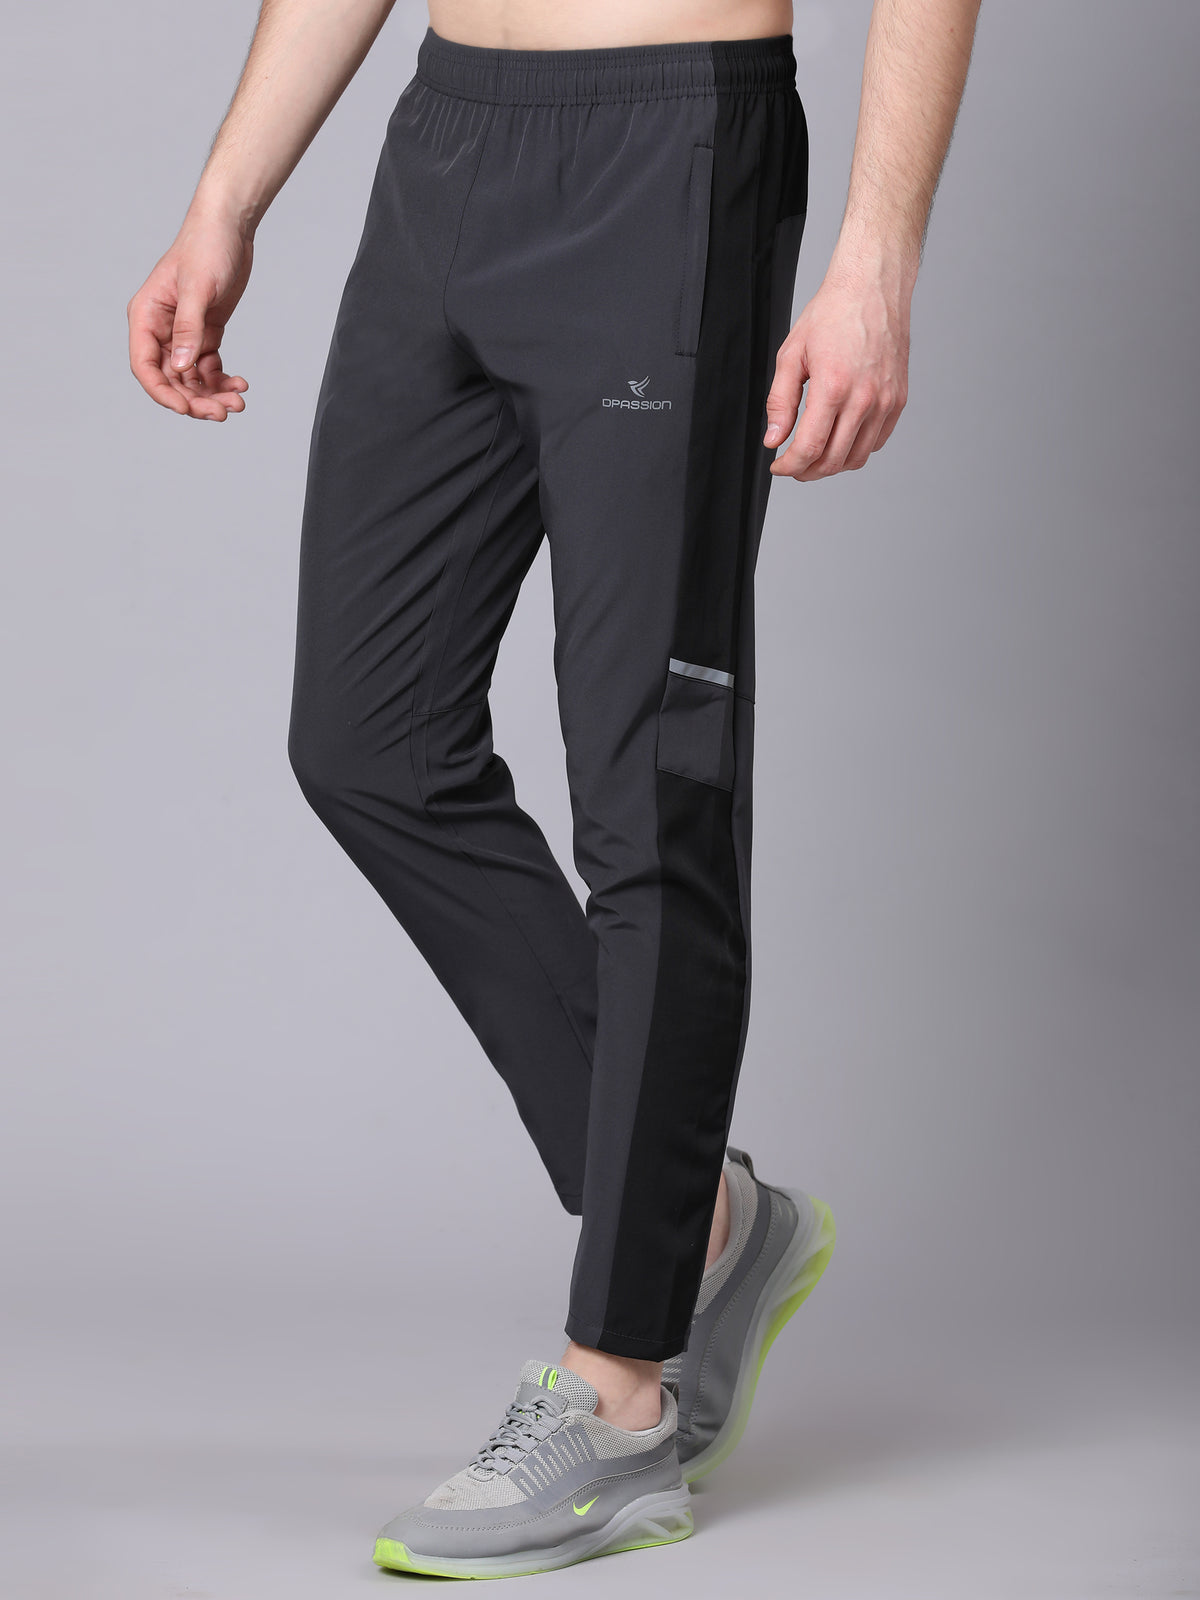 Dpassion 4 Way Lycra Regular fit Running Track Pants for Men/Boys